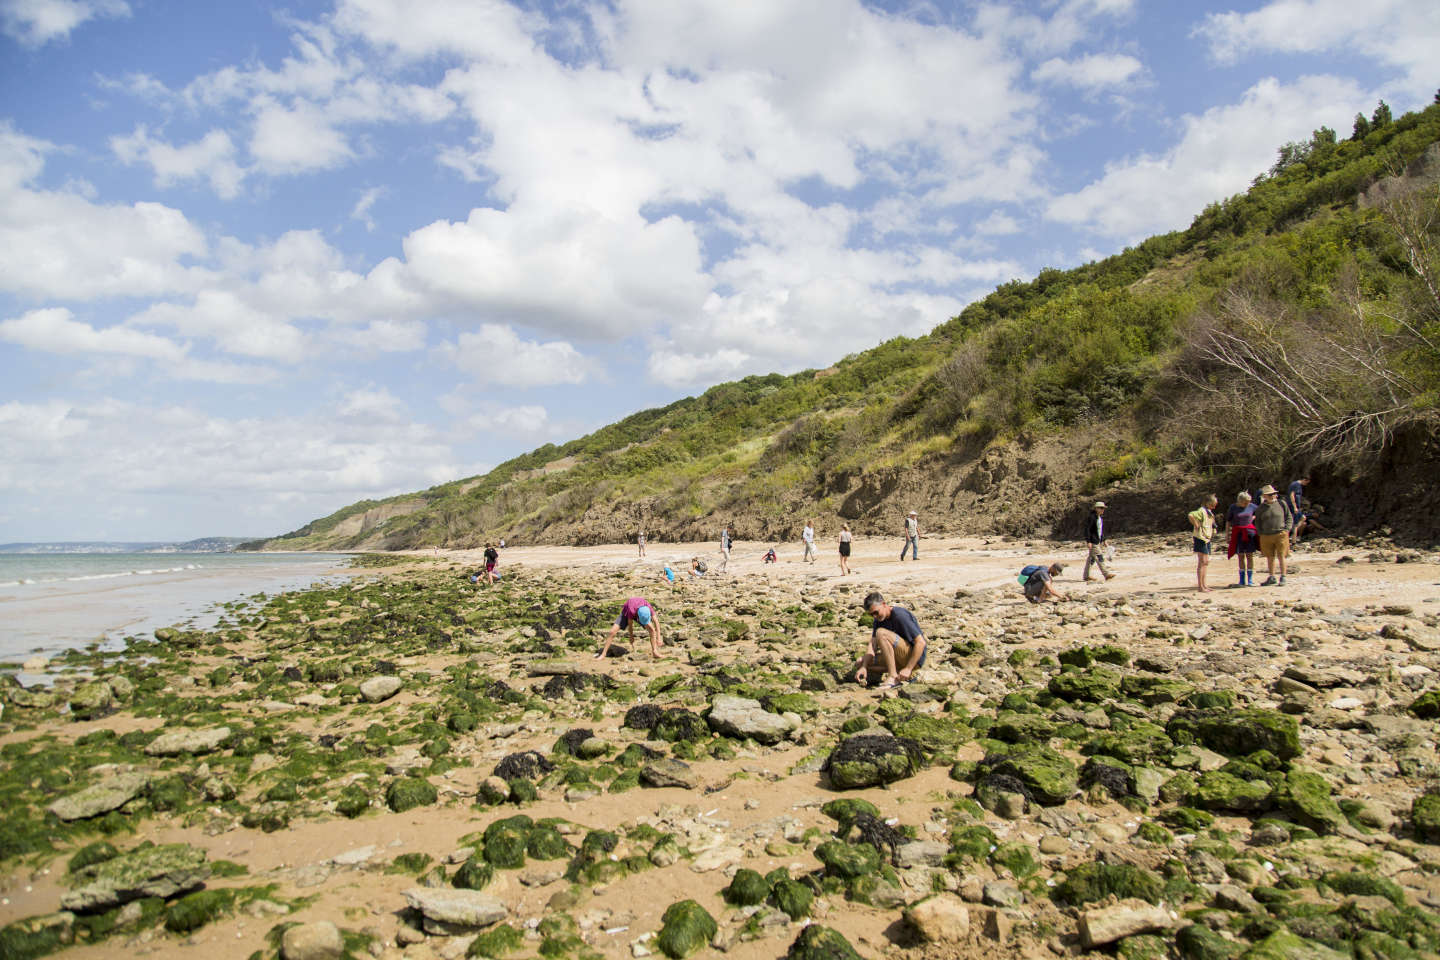 Les fossiles des plages du Calvados bientôt interdits de ramassage ?